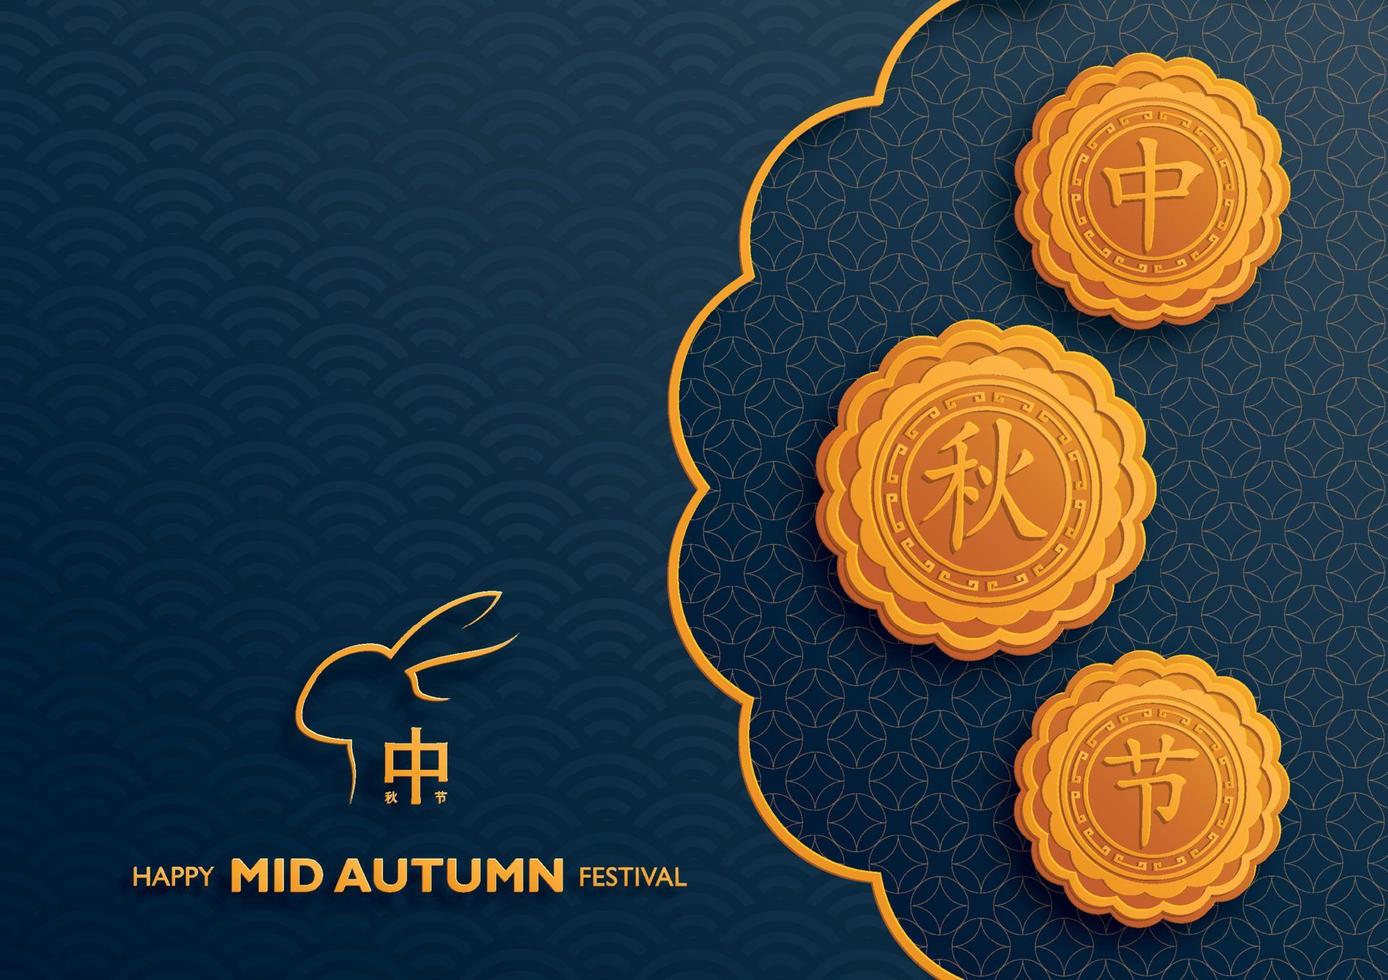 kinesisk midhöstfestival med guldpappersklippt konst och hantverksstil på färgbakgrund vektor